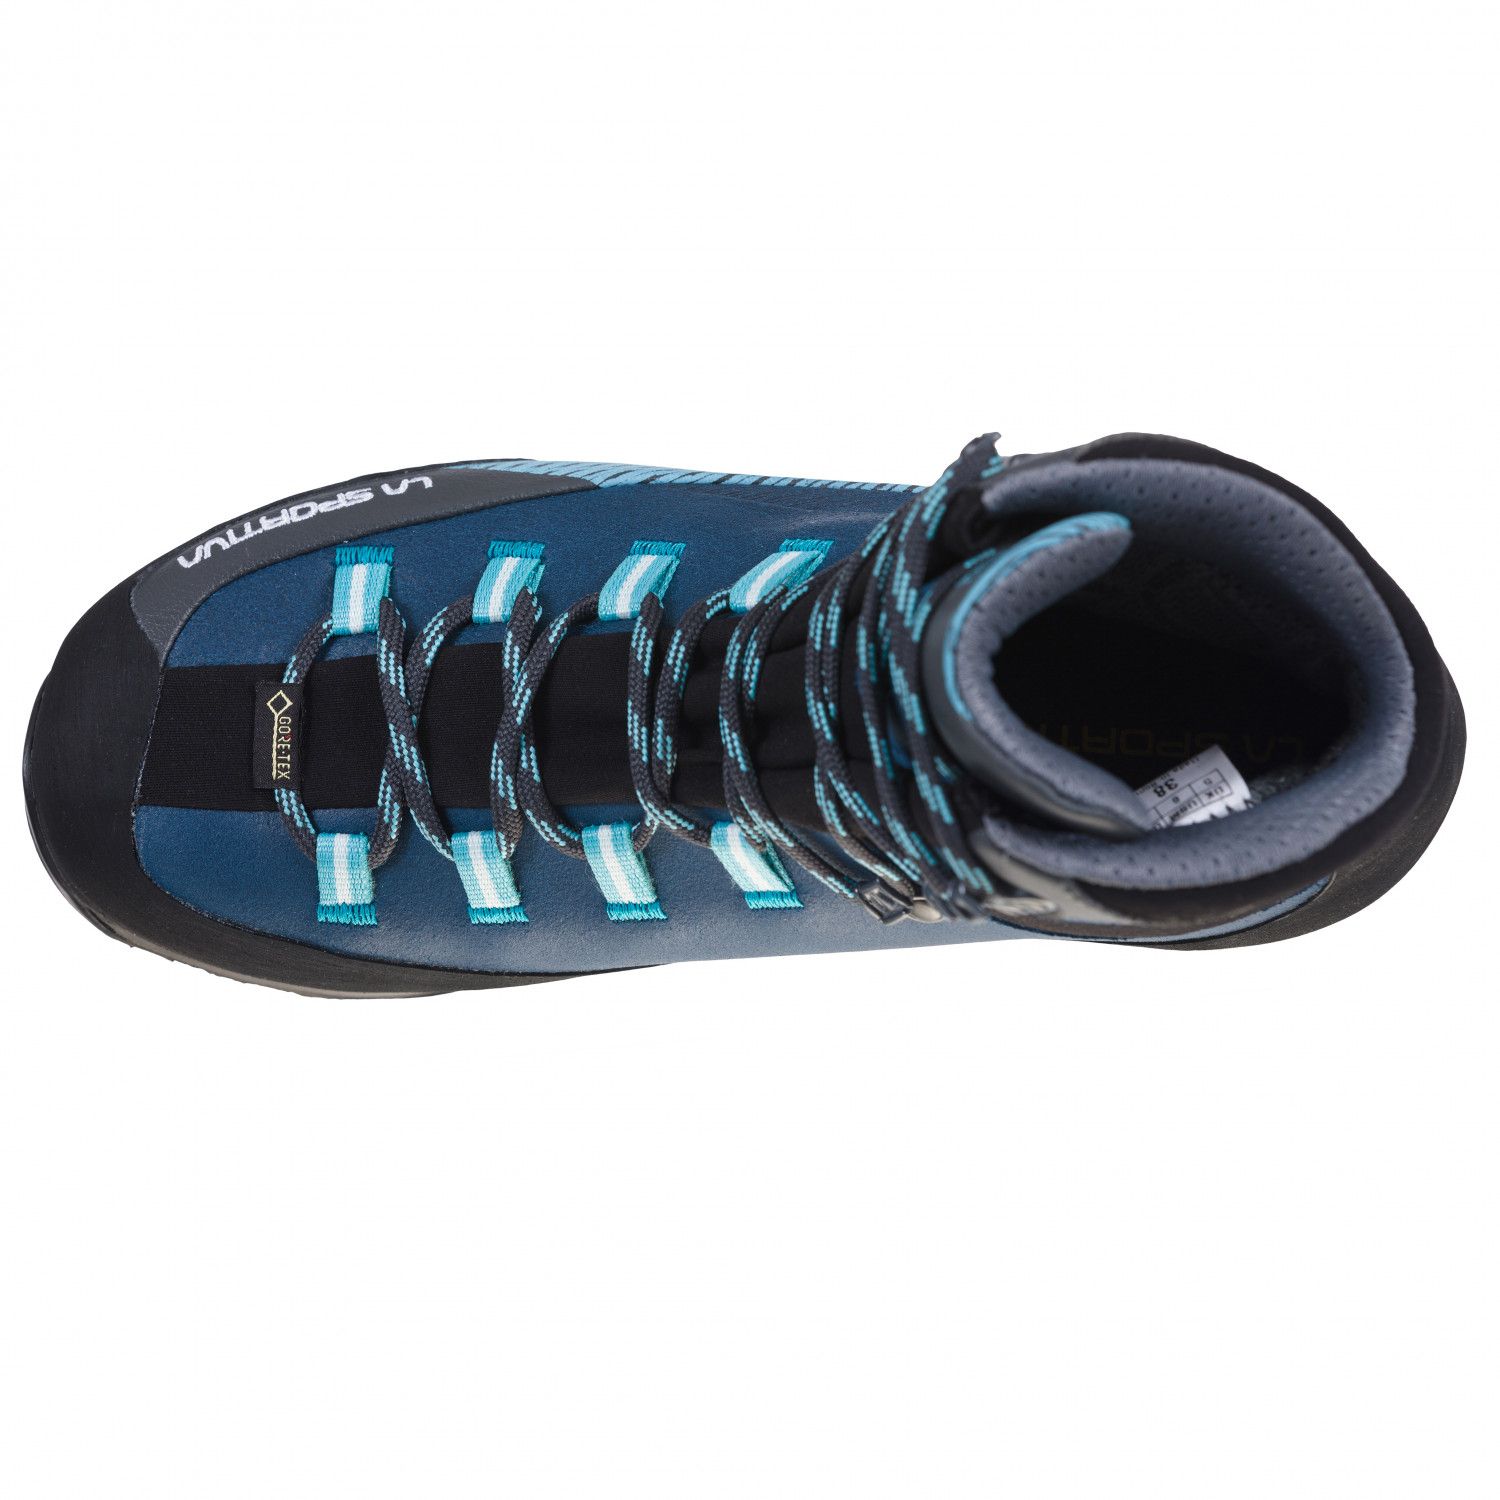 Chaussure de Randonnée Trango TRK Leather GTX Women - Opal pacific Blue